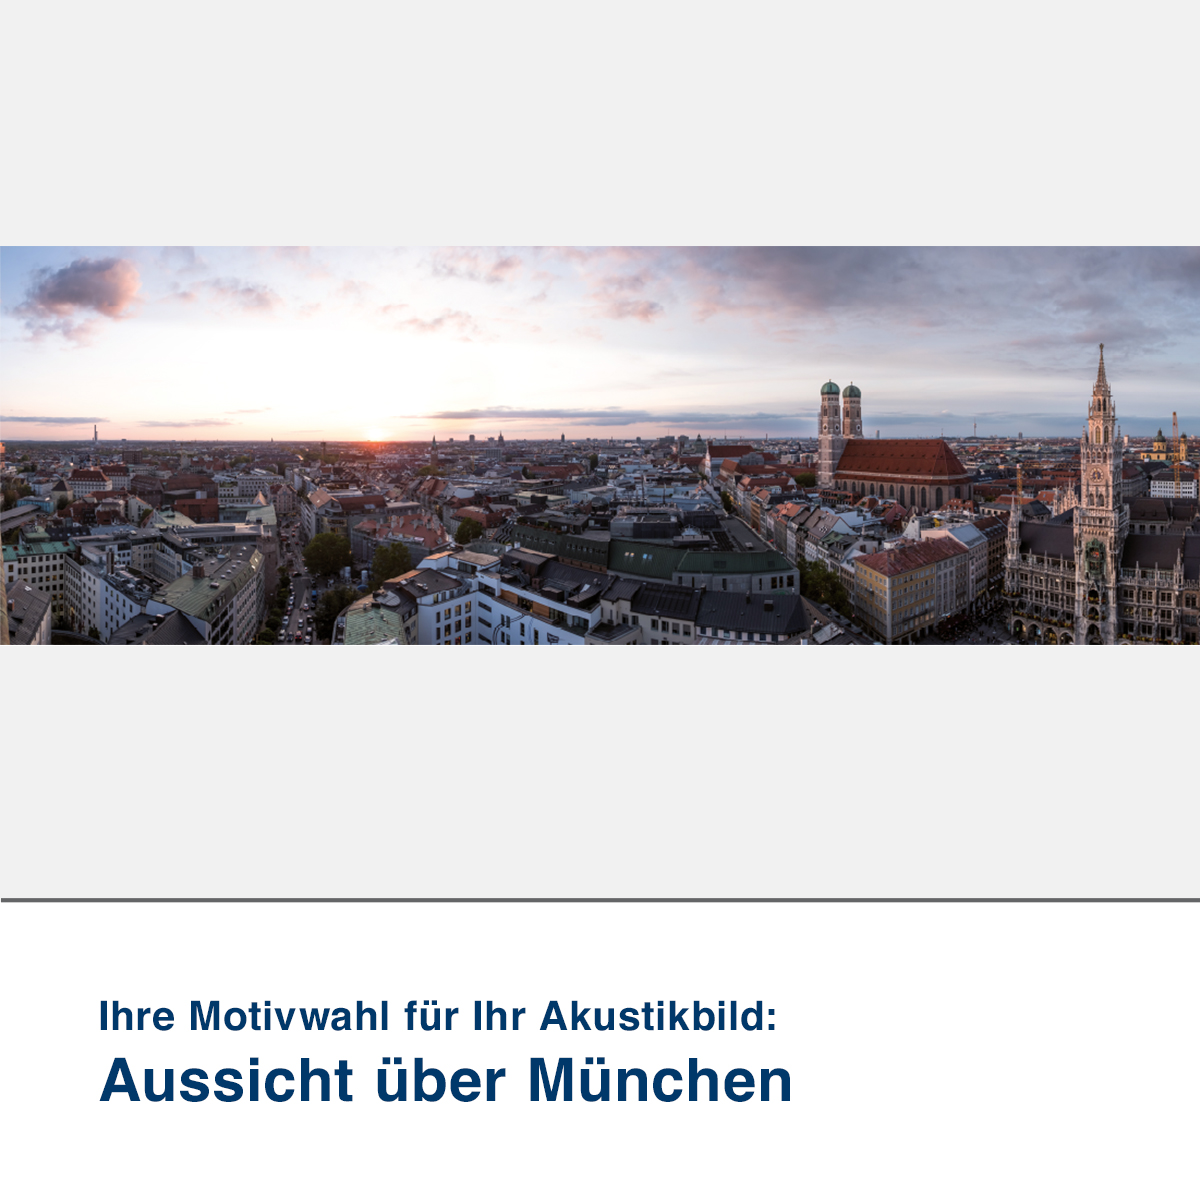  Akustikbild Aussicht über München